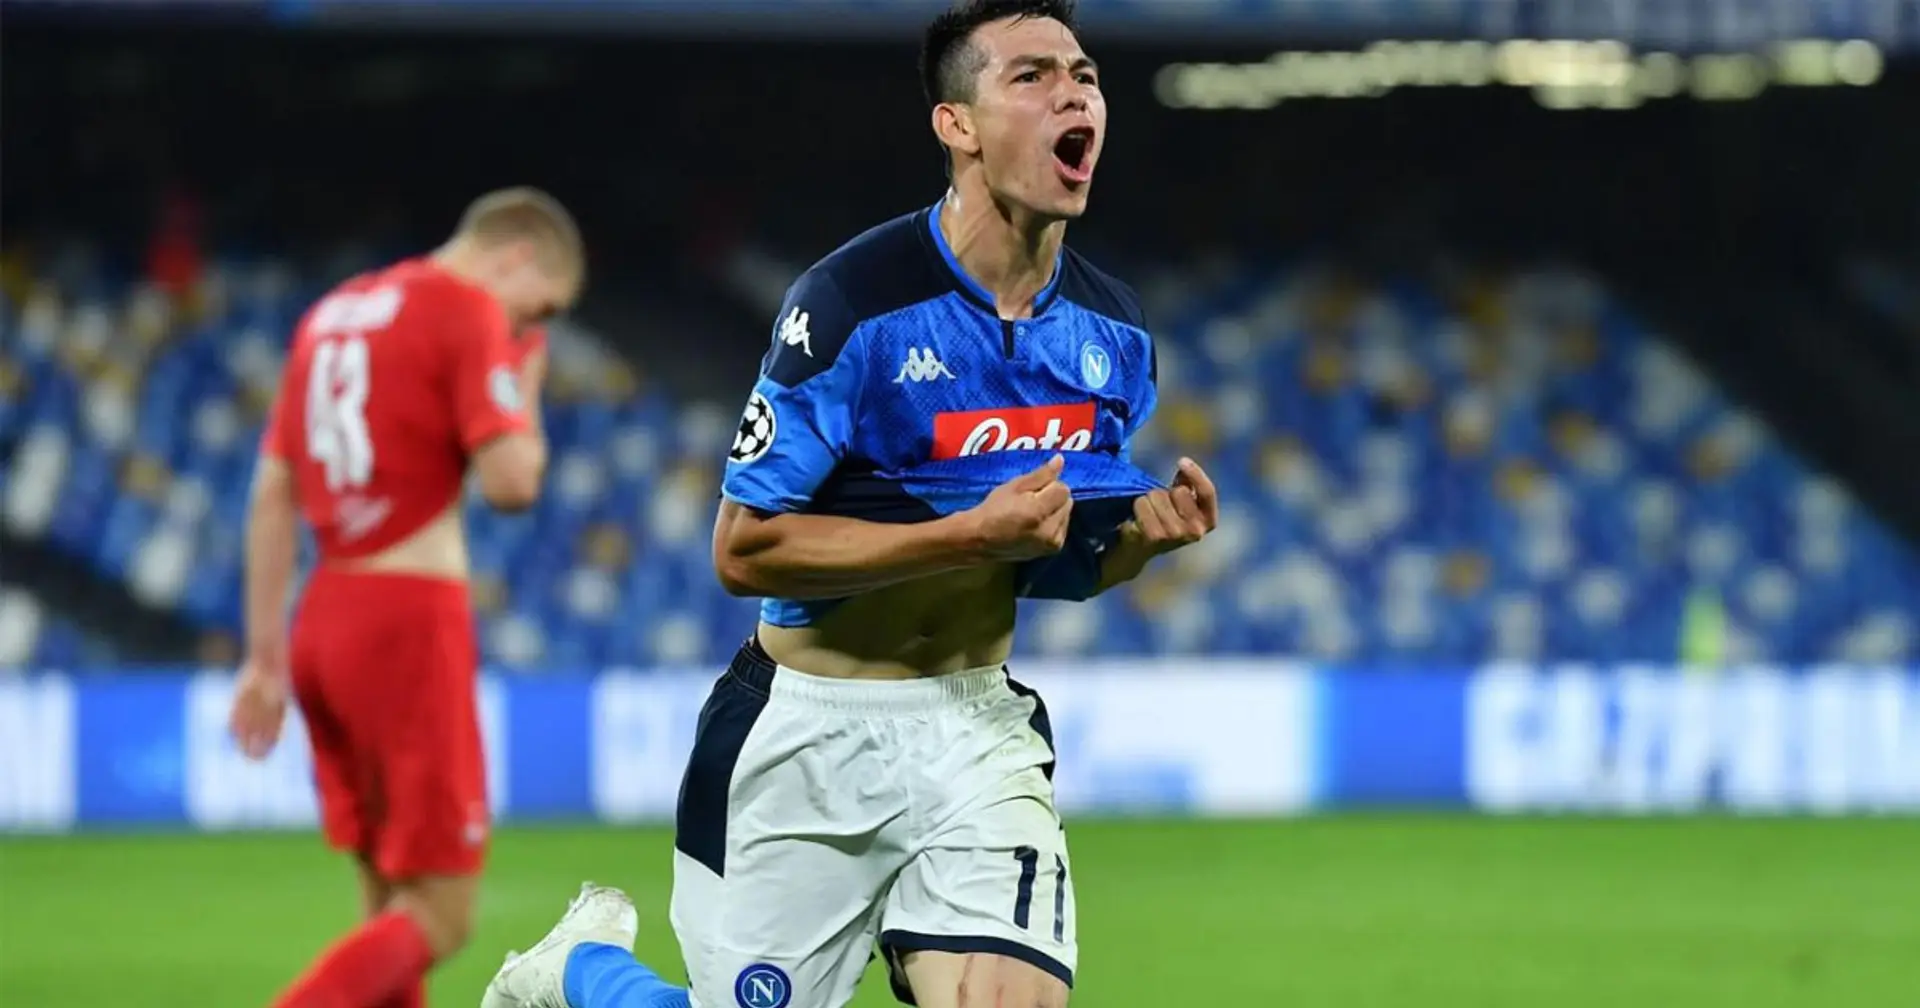 Farebbe bene il Napoli a cedere Lozano in prestito? La risposta è SI per 4 motivi